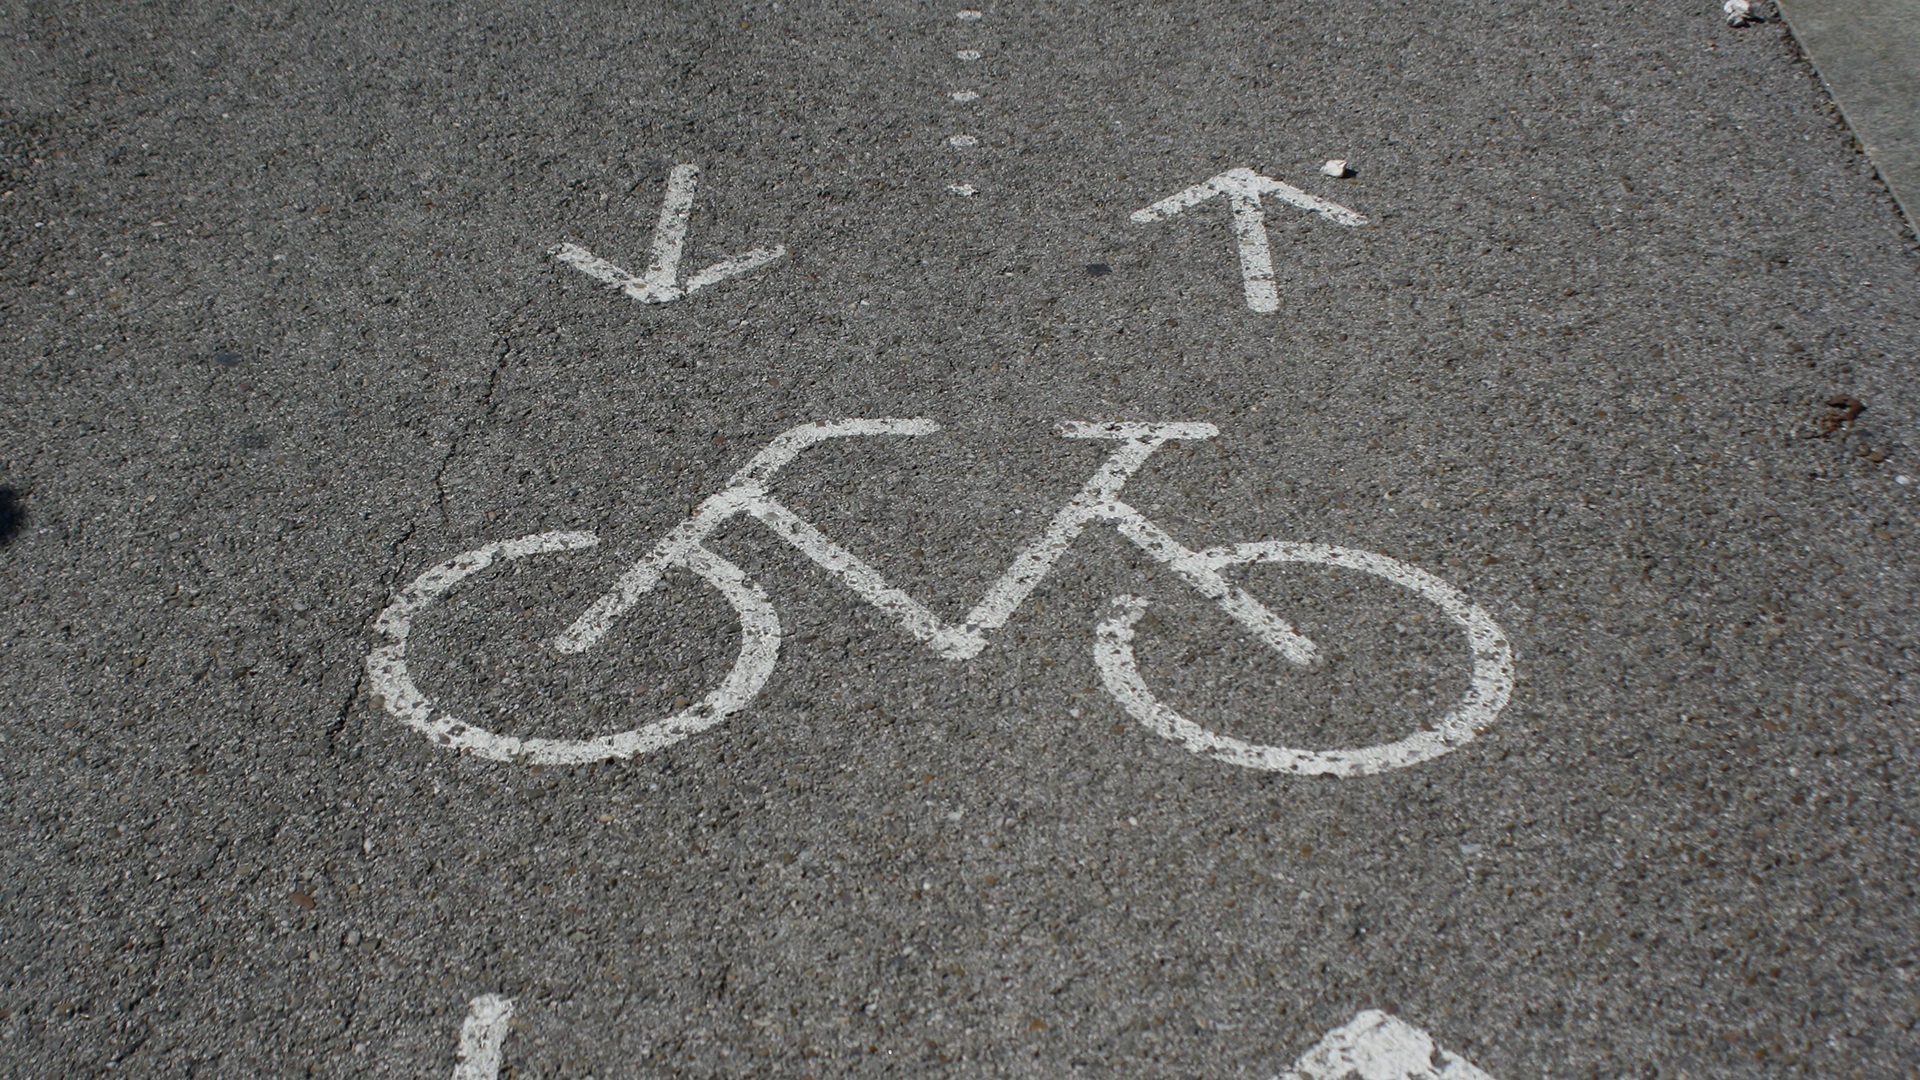 De voorbije vijf jaar zijn er 22 mensen gestorven na een ongeval op een fietspad in twee richtingen. In totaal telt zo'n fietspad zelfs vijftig procent meer ongevallen dan haar evenknie in 1 richting.